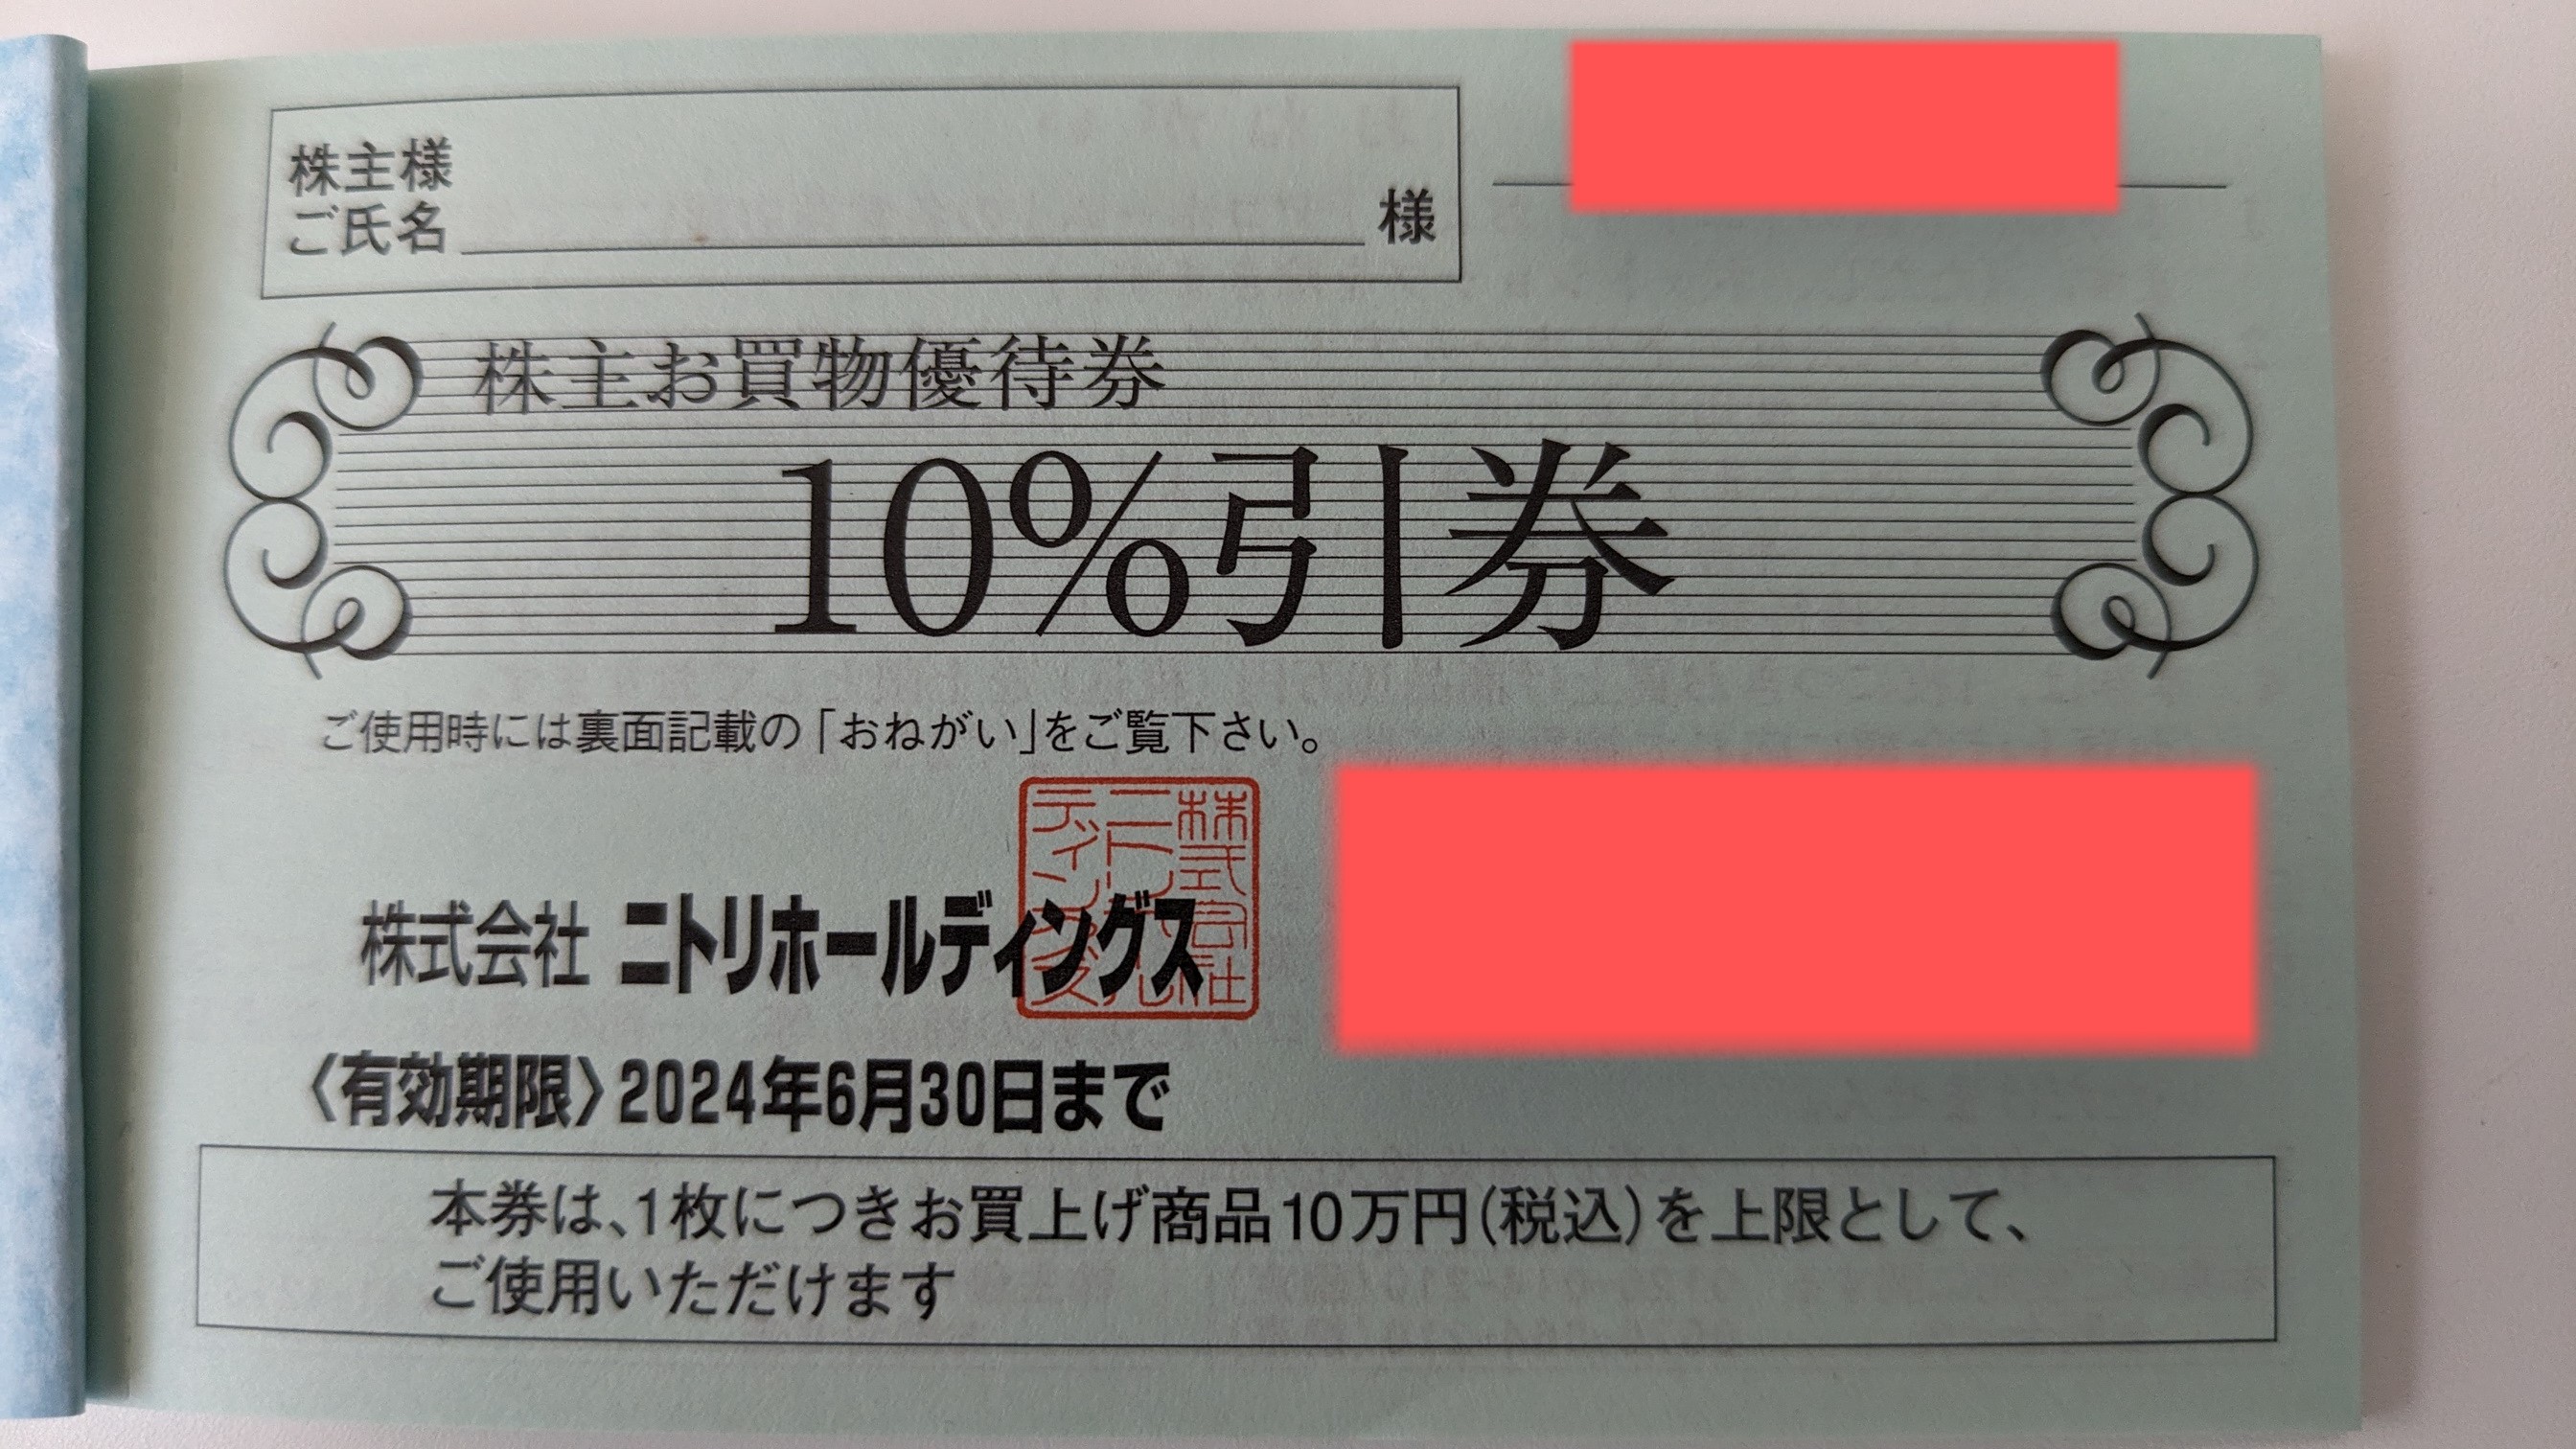 チケットカプリ オンラインストア / 【ニトリ】株主お買物優待券 10%引